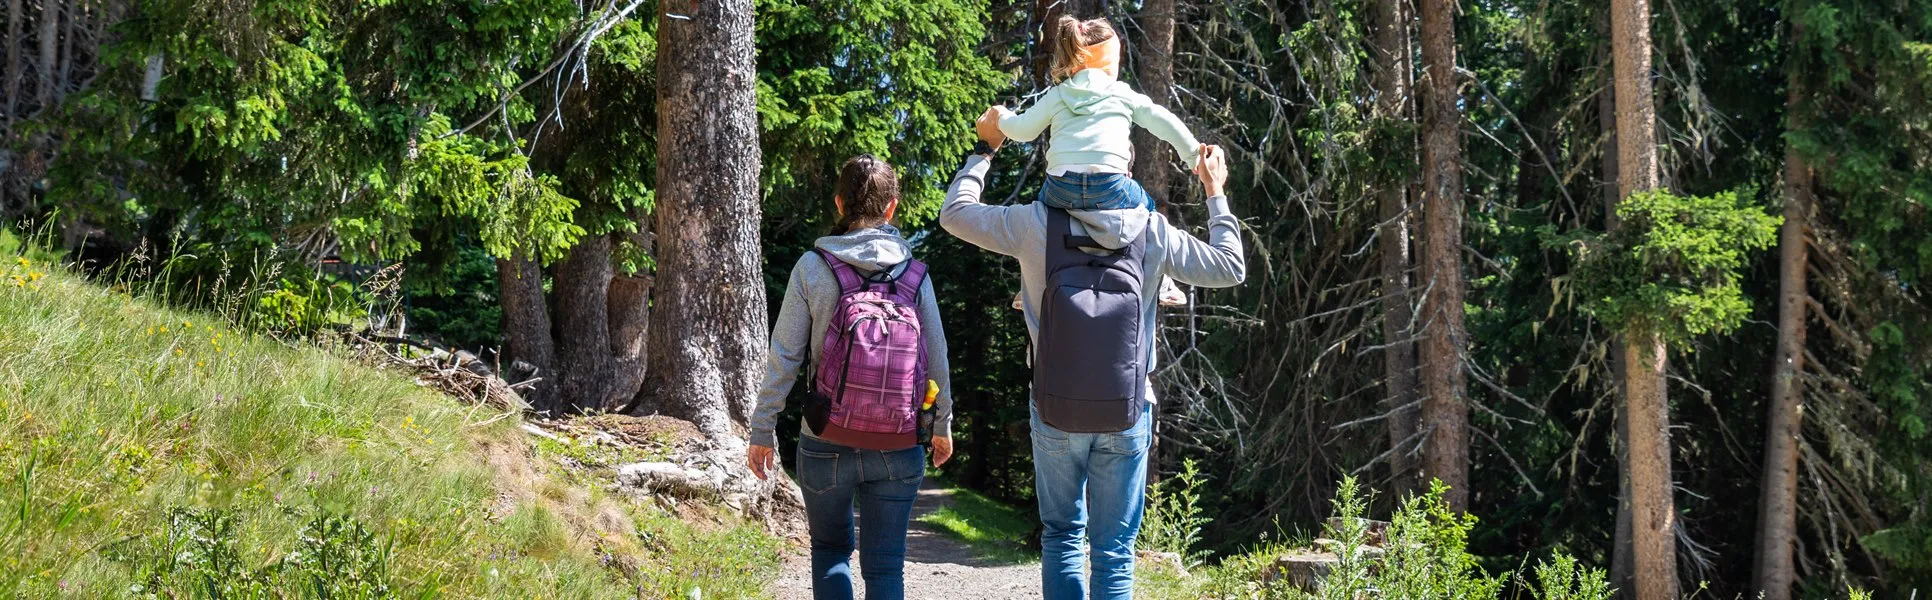 kvinna med ryggsäck  och man med barn på axlarna vandrar i skogen